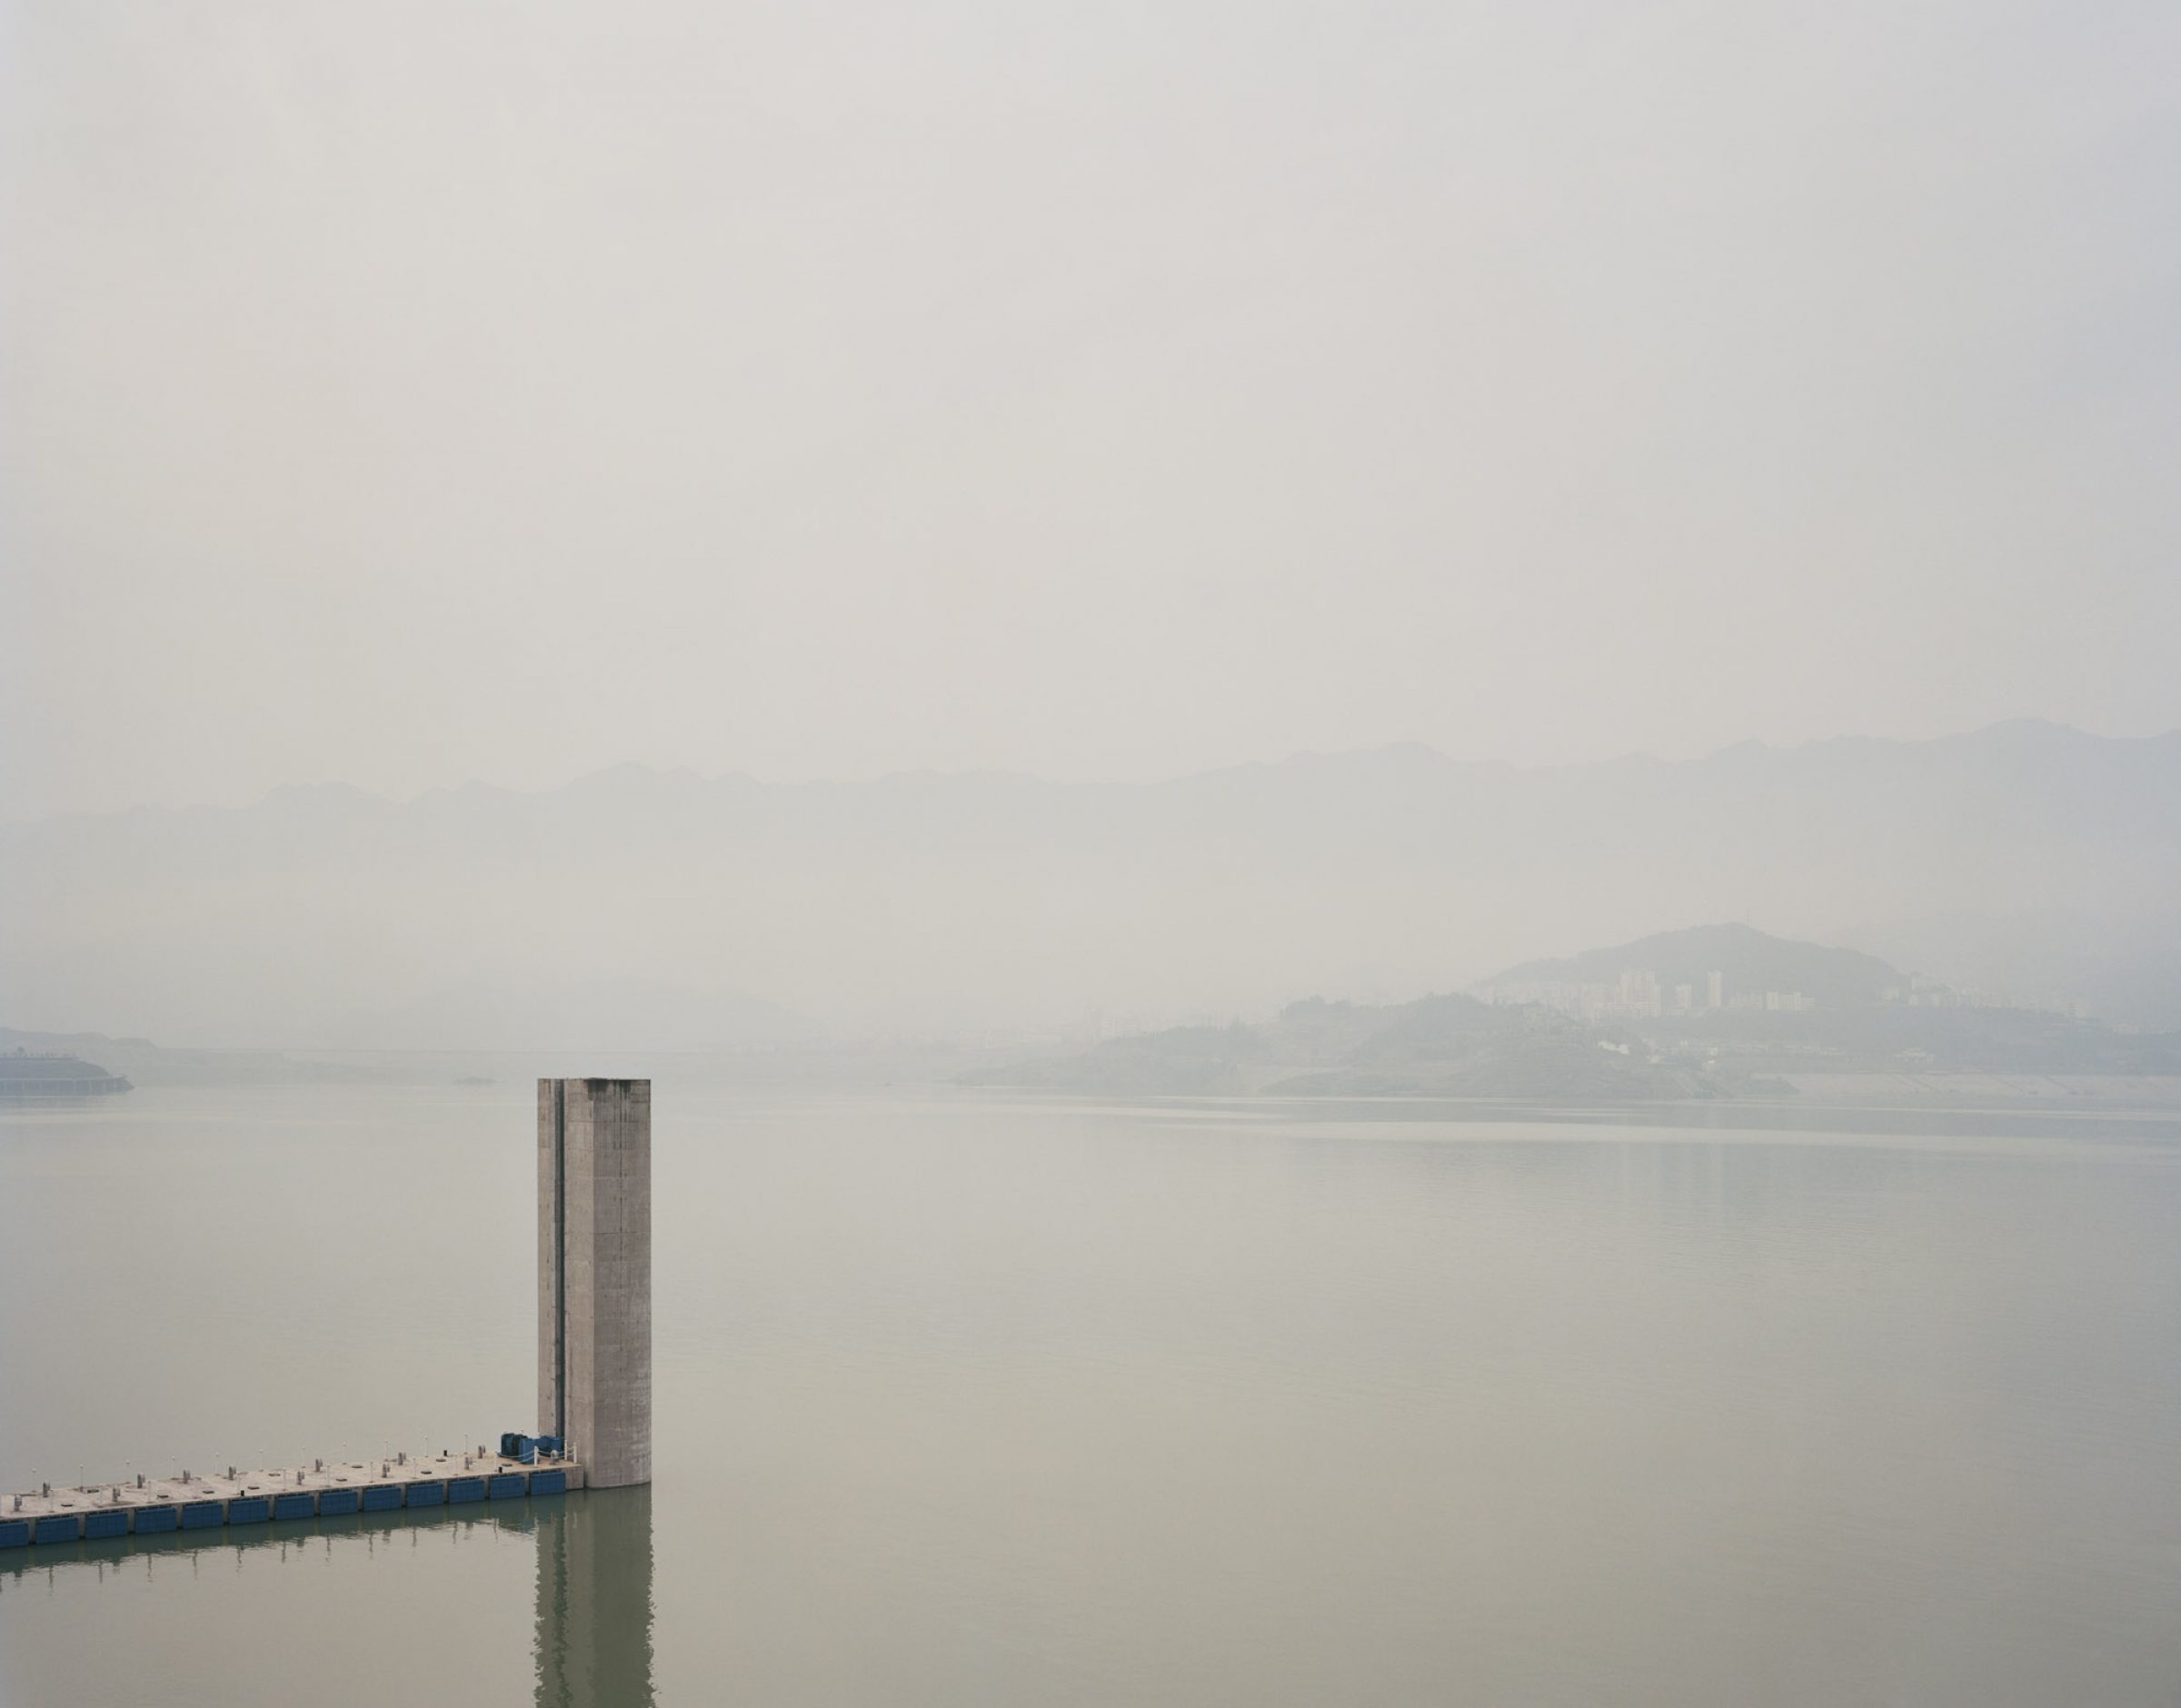 Yangtze, The Long River